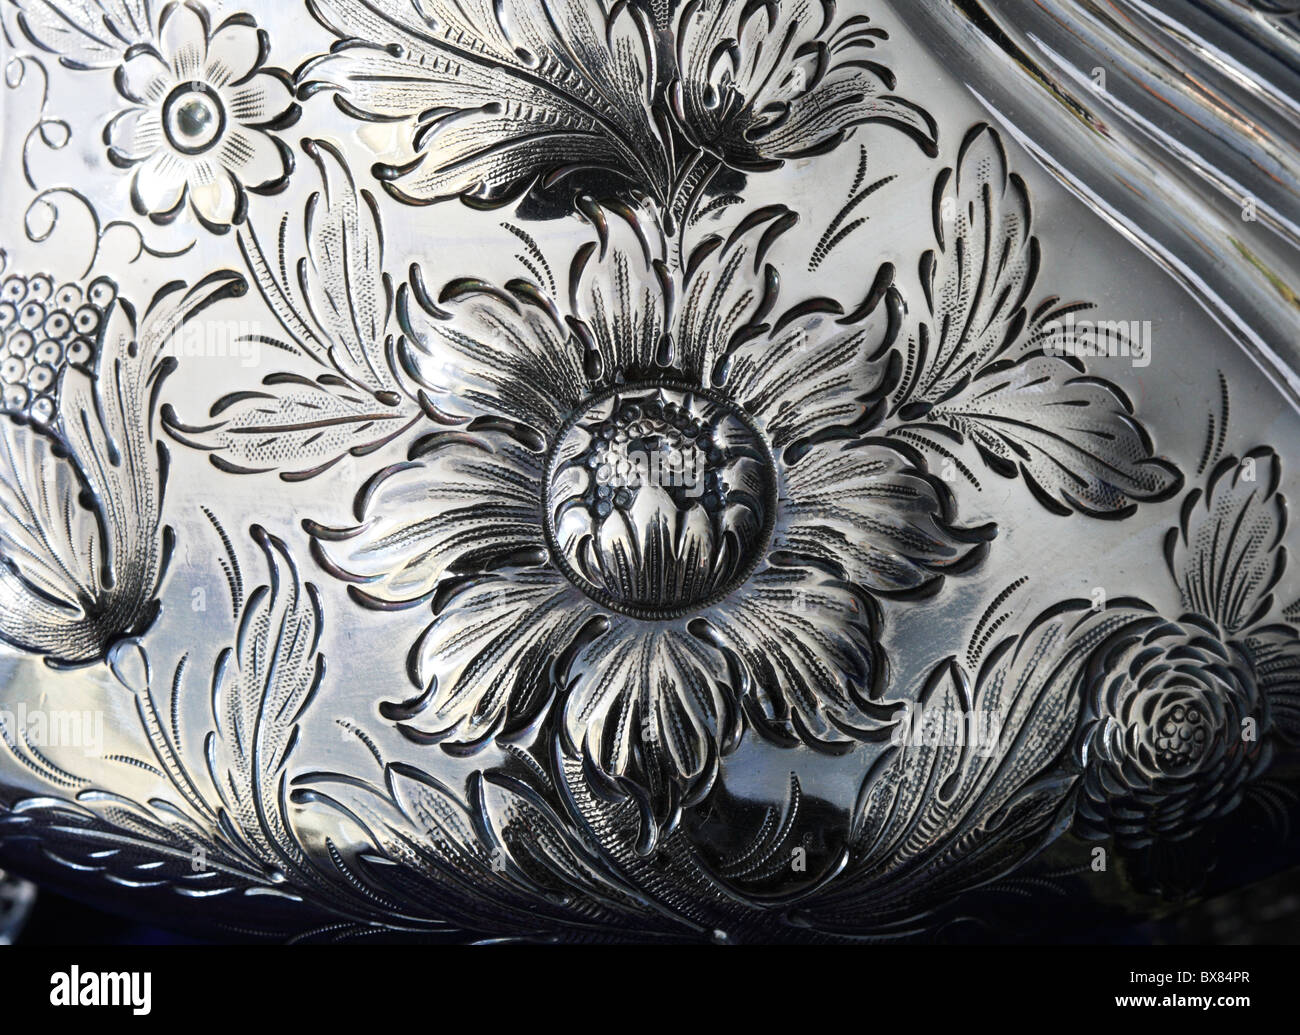 Dettaglio di un disegno floreale su un antico brocca d'argento Foto Stock